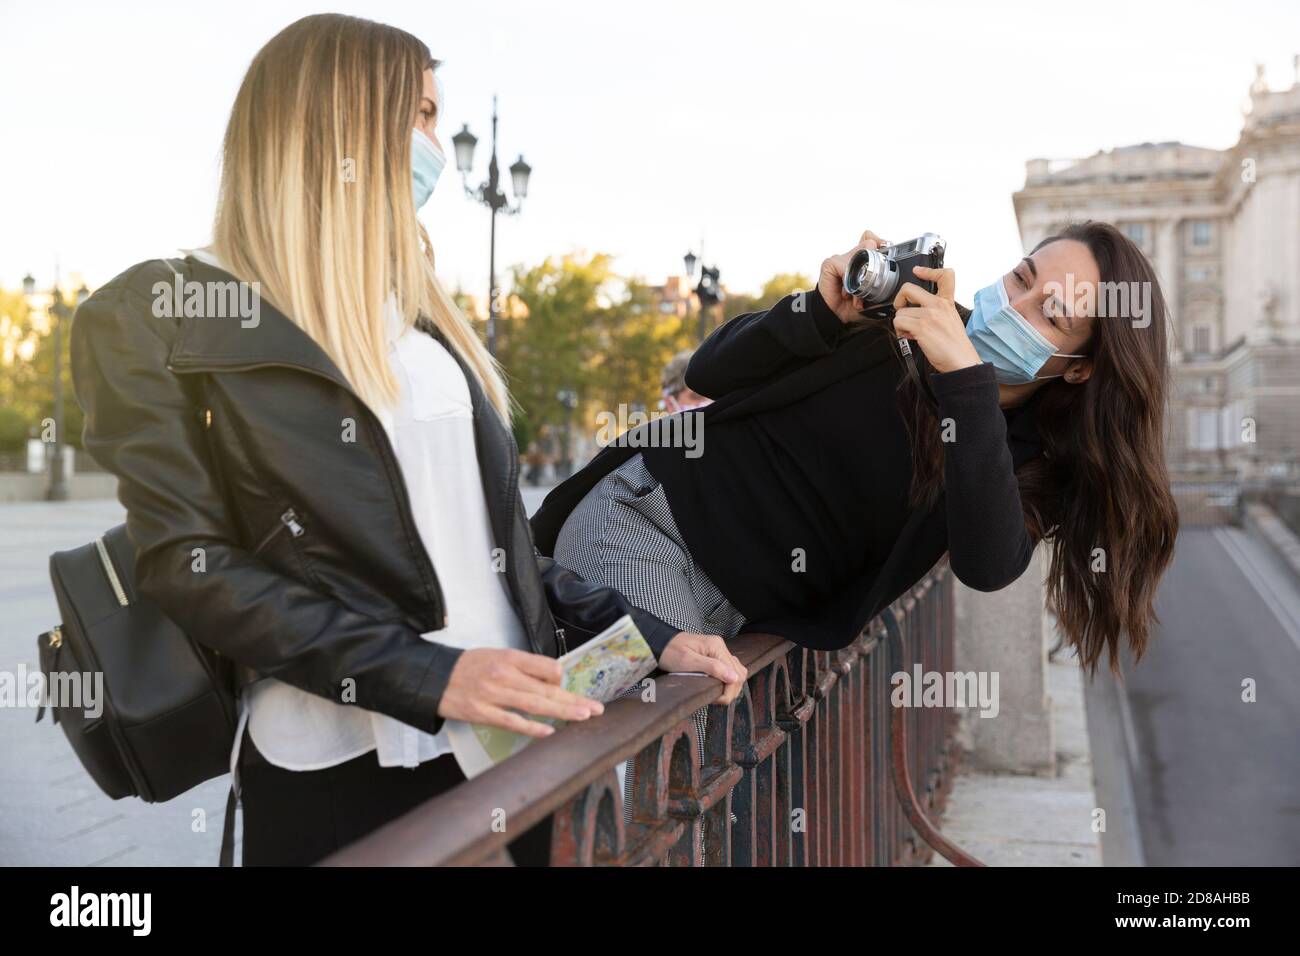 Ein Mädchen, das mit einer analogen Kamera ein Foto von ihrer Freundin gemacht hat. Beide tragen Gesichtsmasken. Konzept der neuen Normalität. Stockfoto